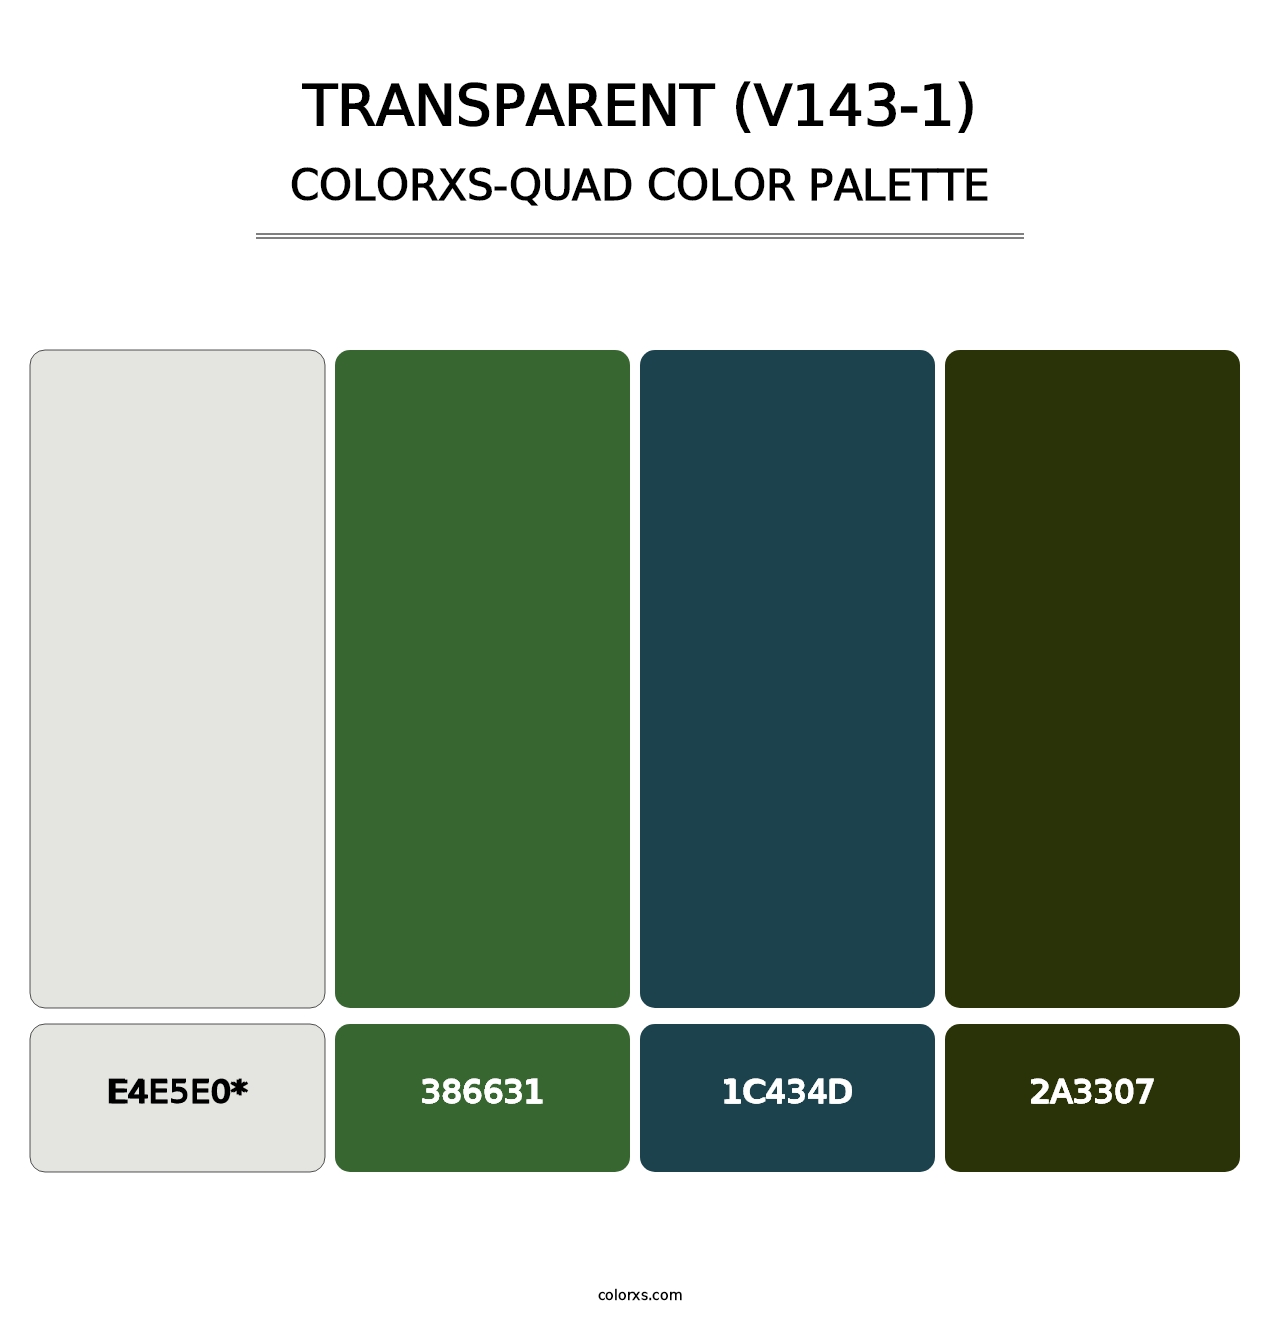 Transparent (V143-1) - Colorxs Quad Palette